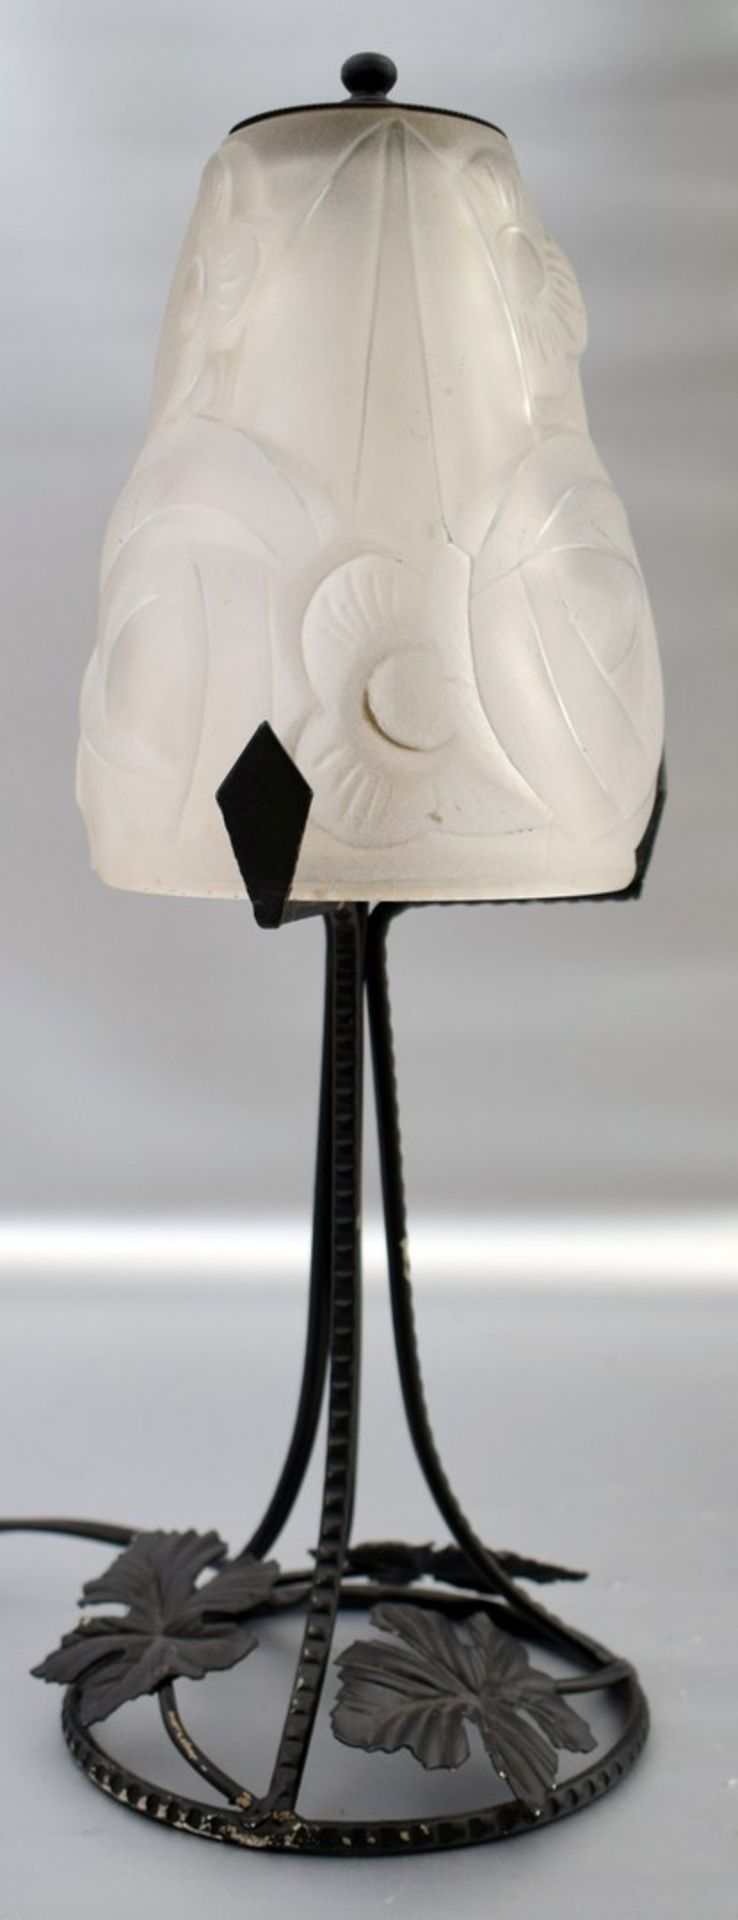 Jugendstil-Tischlampe 1-lichtig, runder, mit Blattwerk verzierter Fuß, Milchglasschirm, H 34 cm